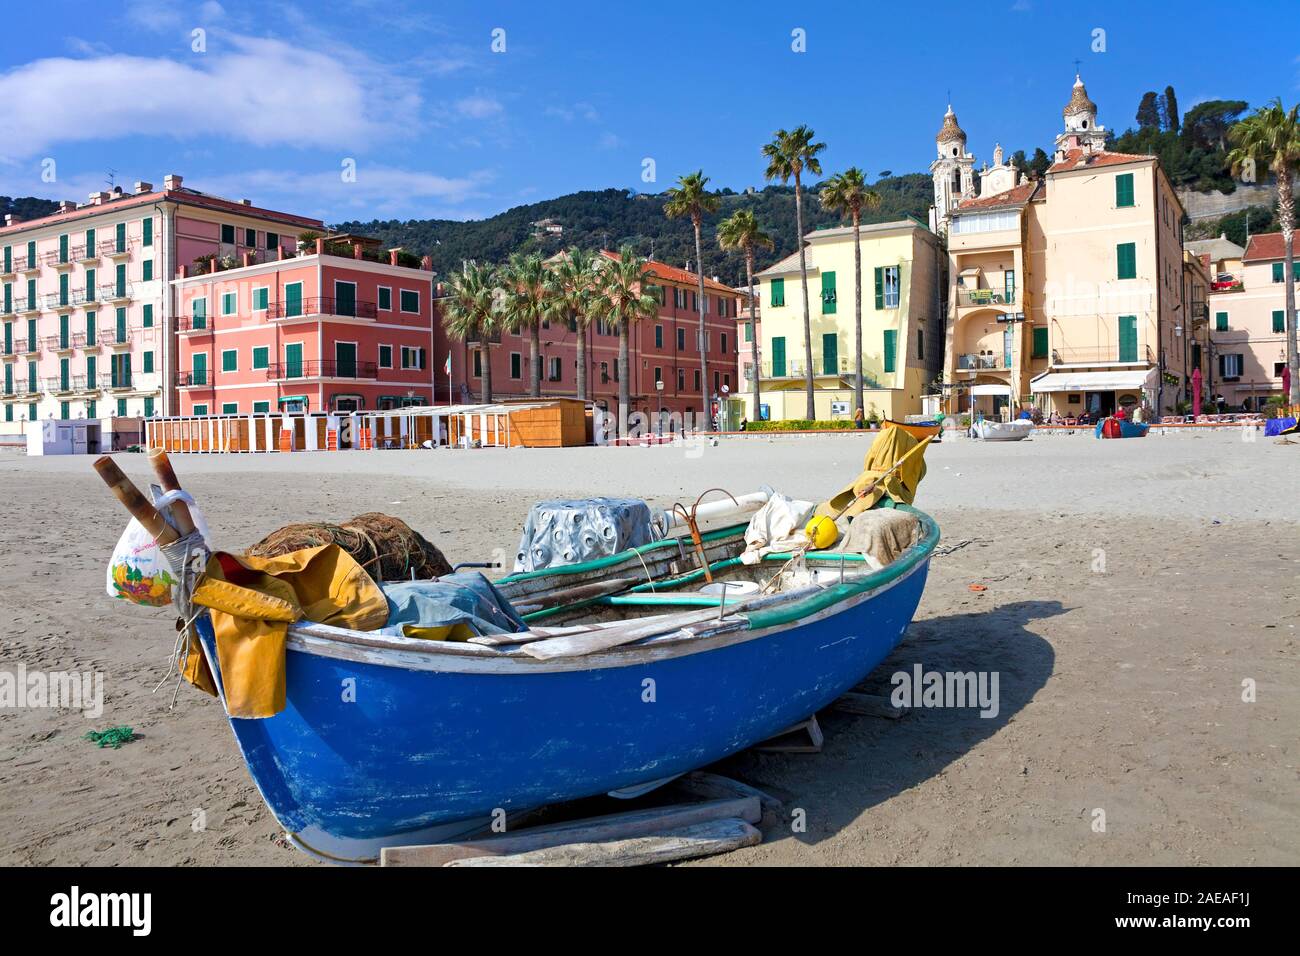 La pesca in barca alla spiaggia di Laigueglia, costa ligure, Liguria, Italia Foto Stock